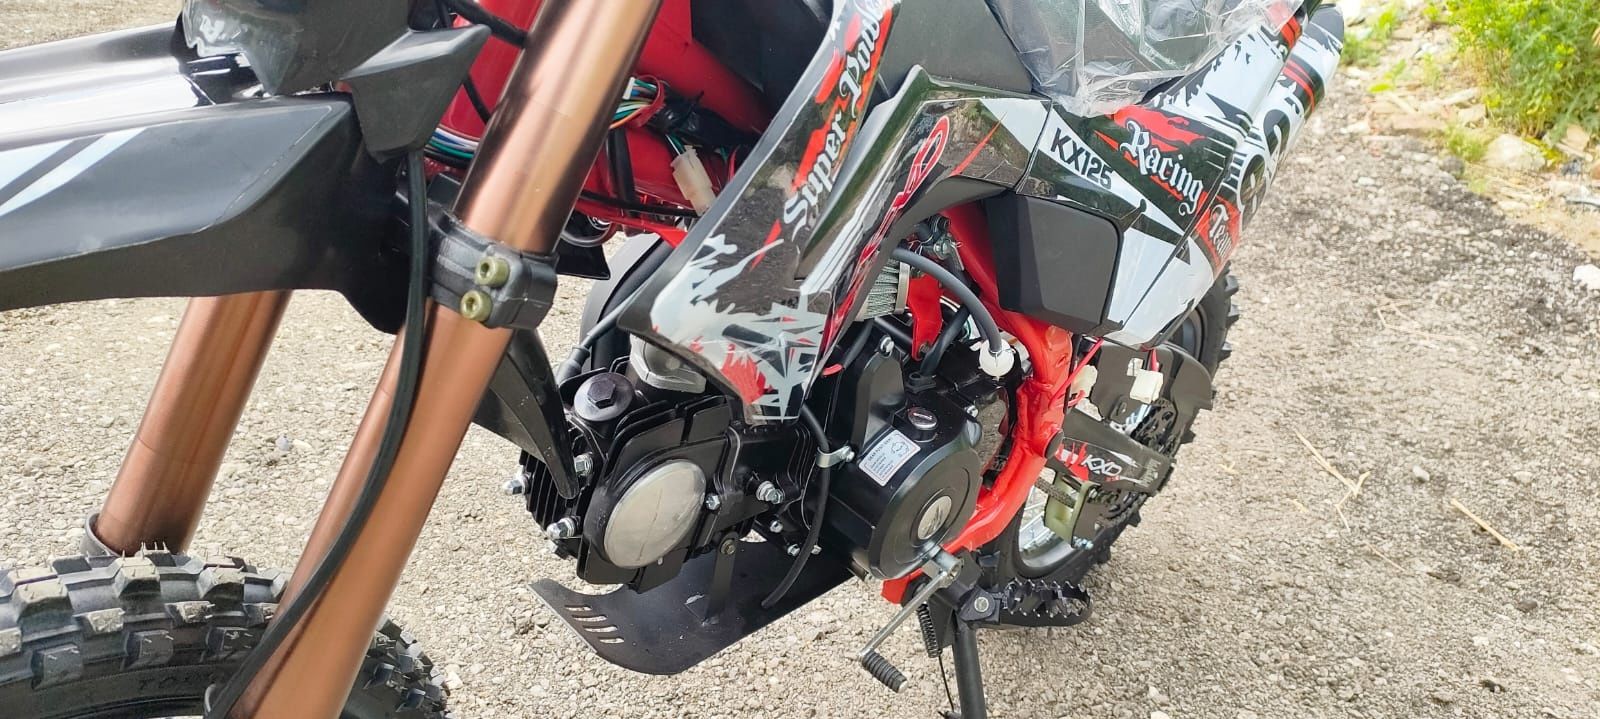 Cross 125cc kxd nou cu garanție și livrare in toată țara